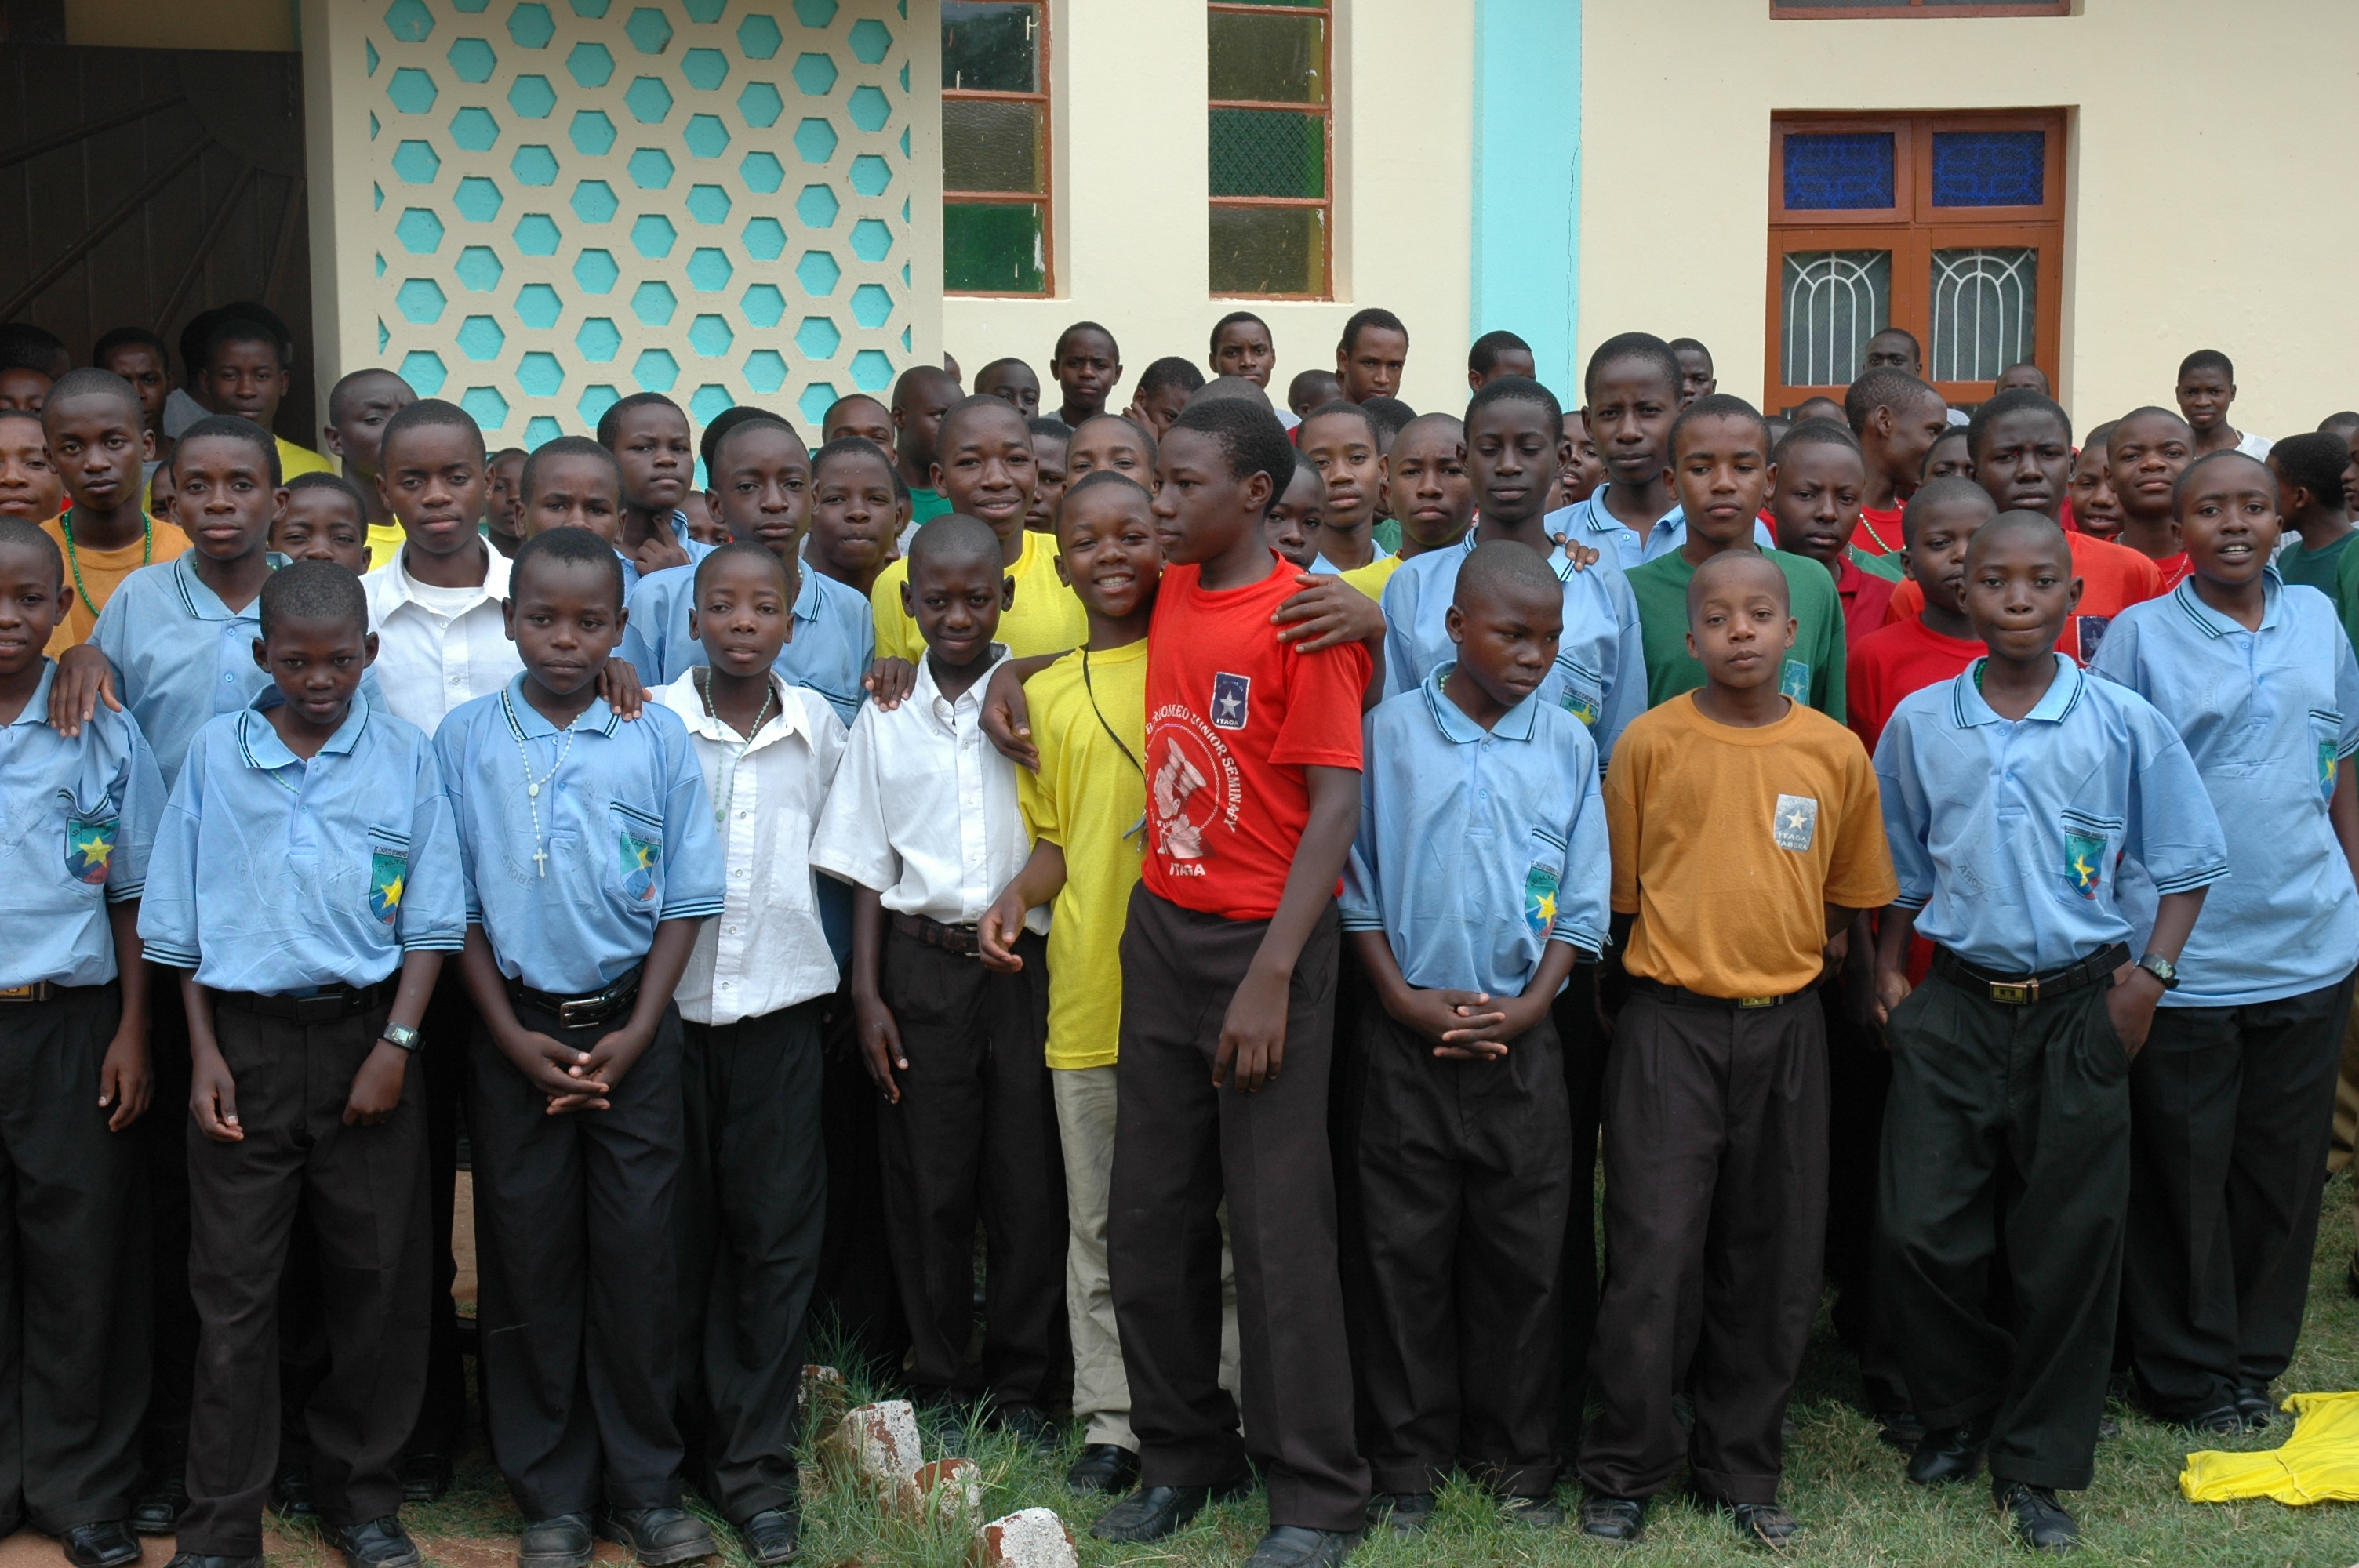 Tanzania Classroom